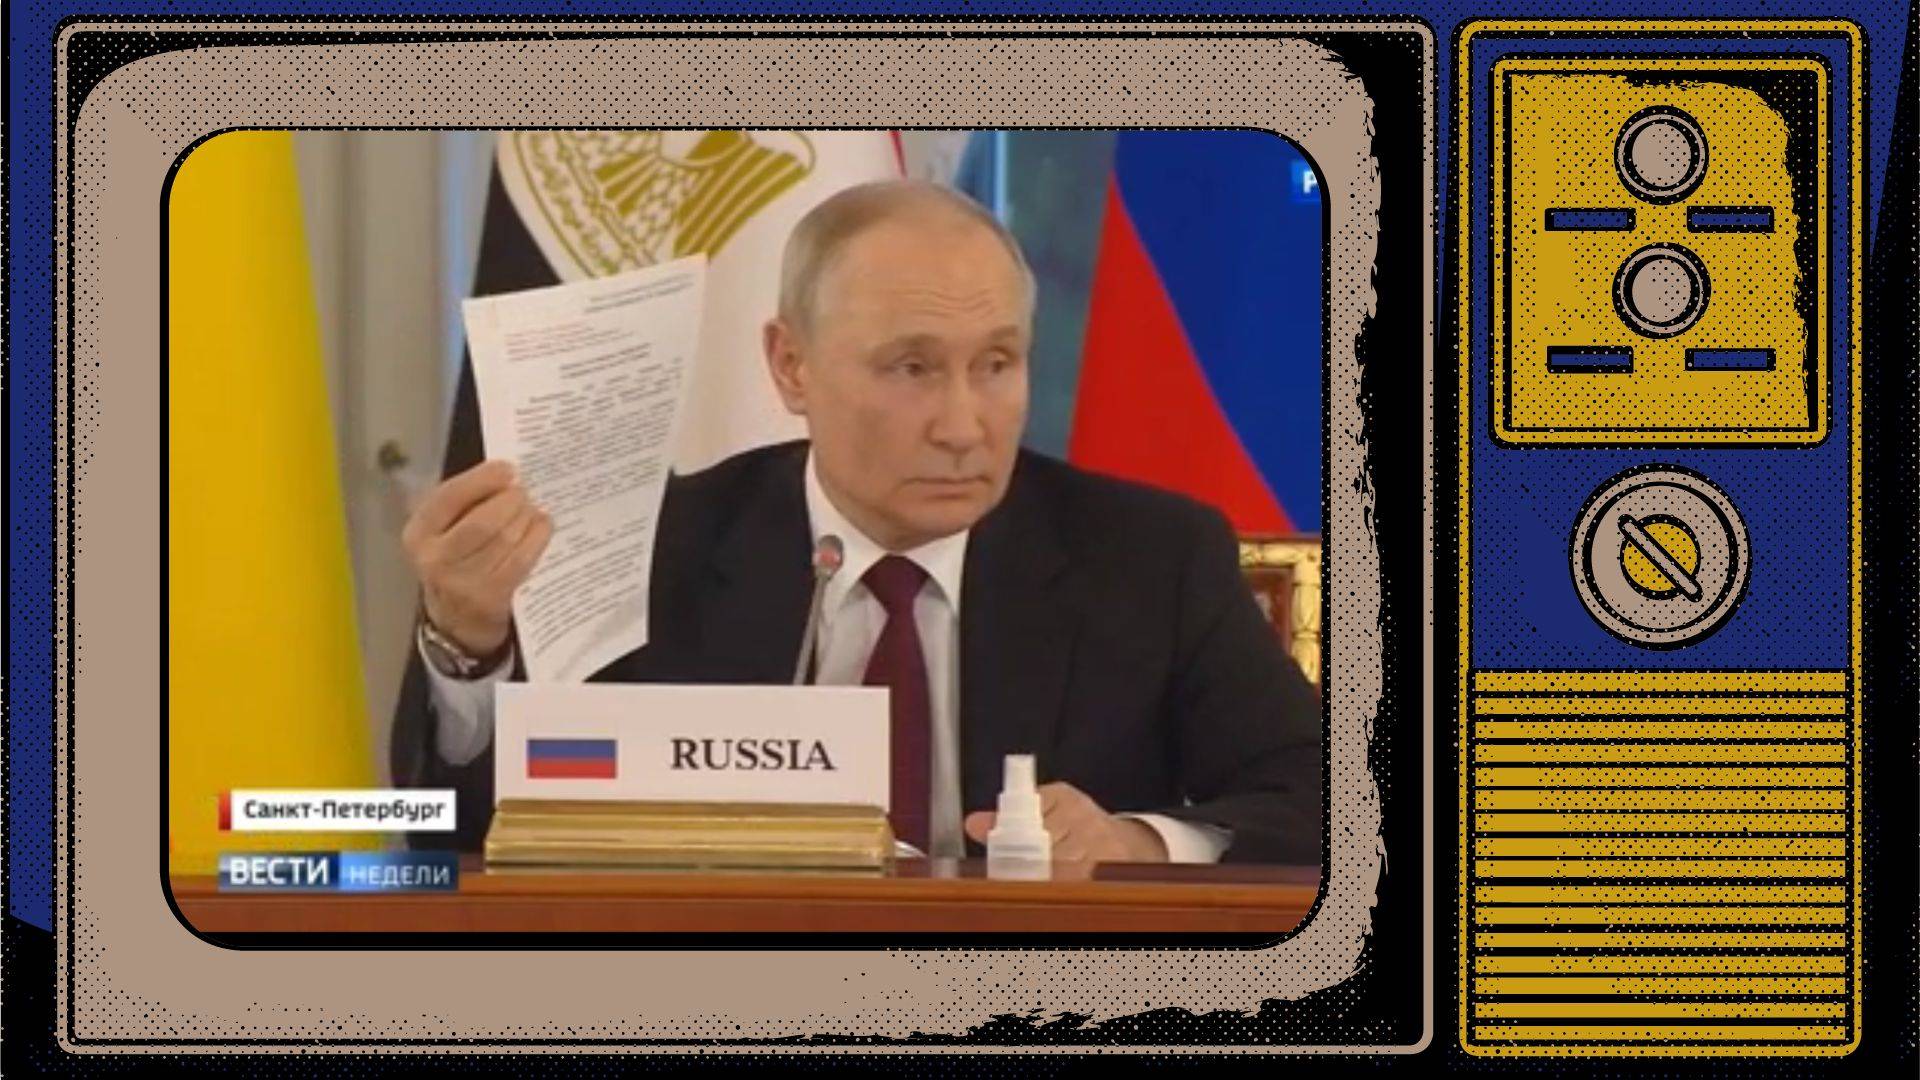 Grafika: Putin o wojnie. W ramce starego telewizora stopklatka z Putinem trzymającym w rece dokument